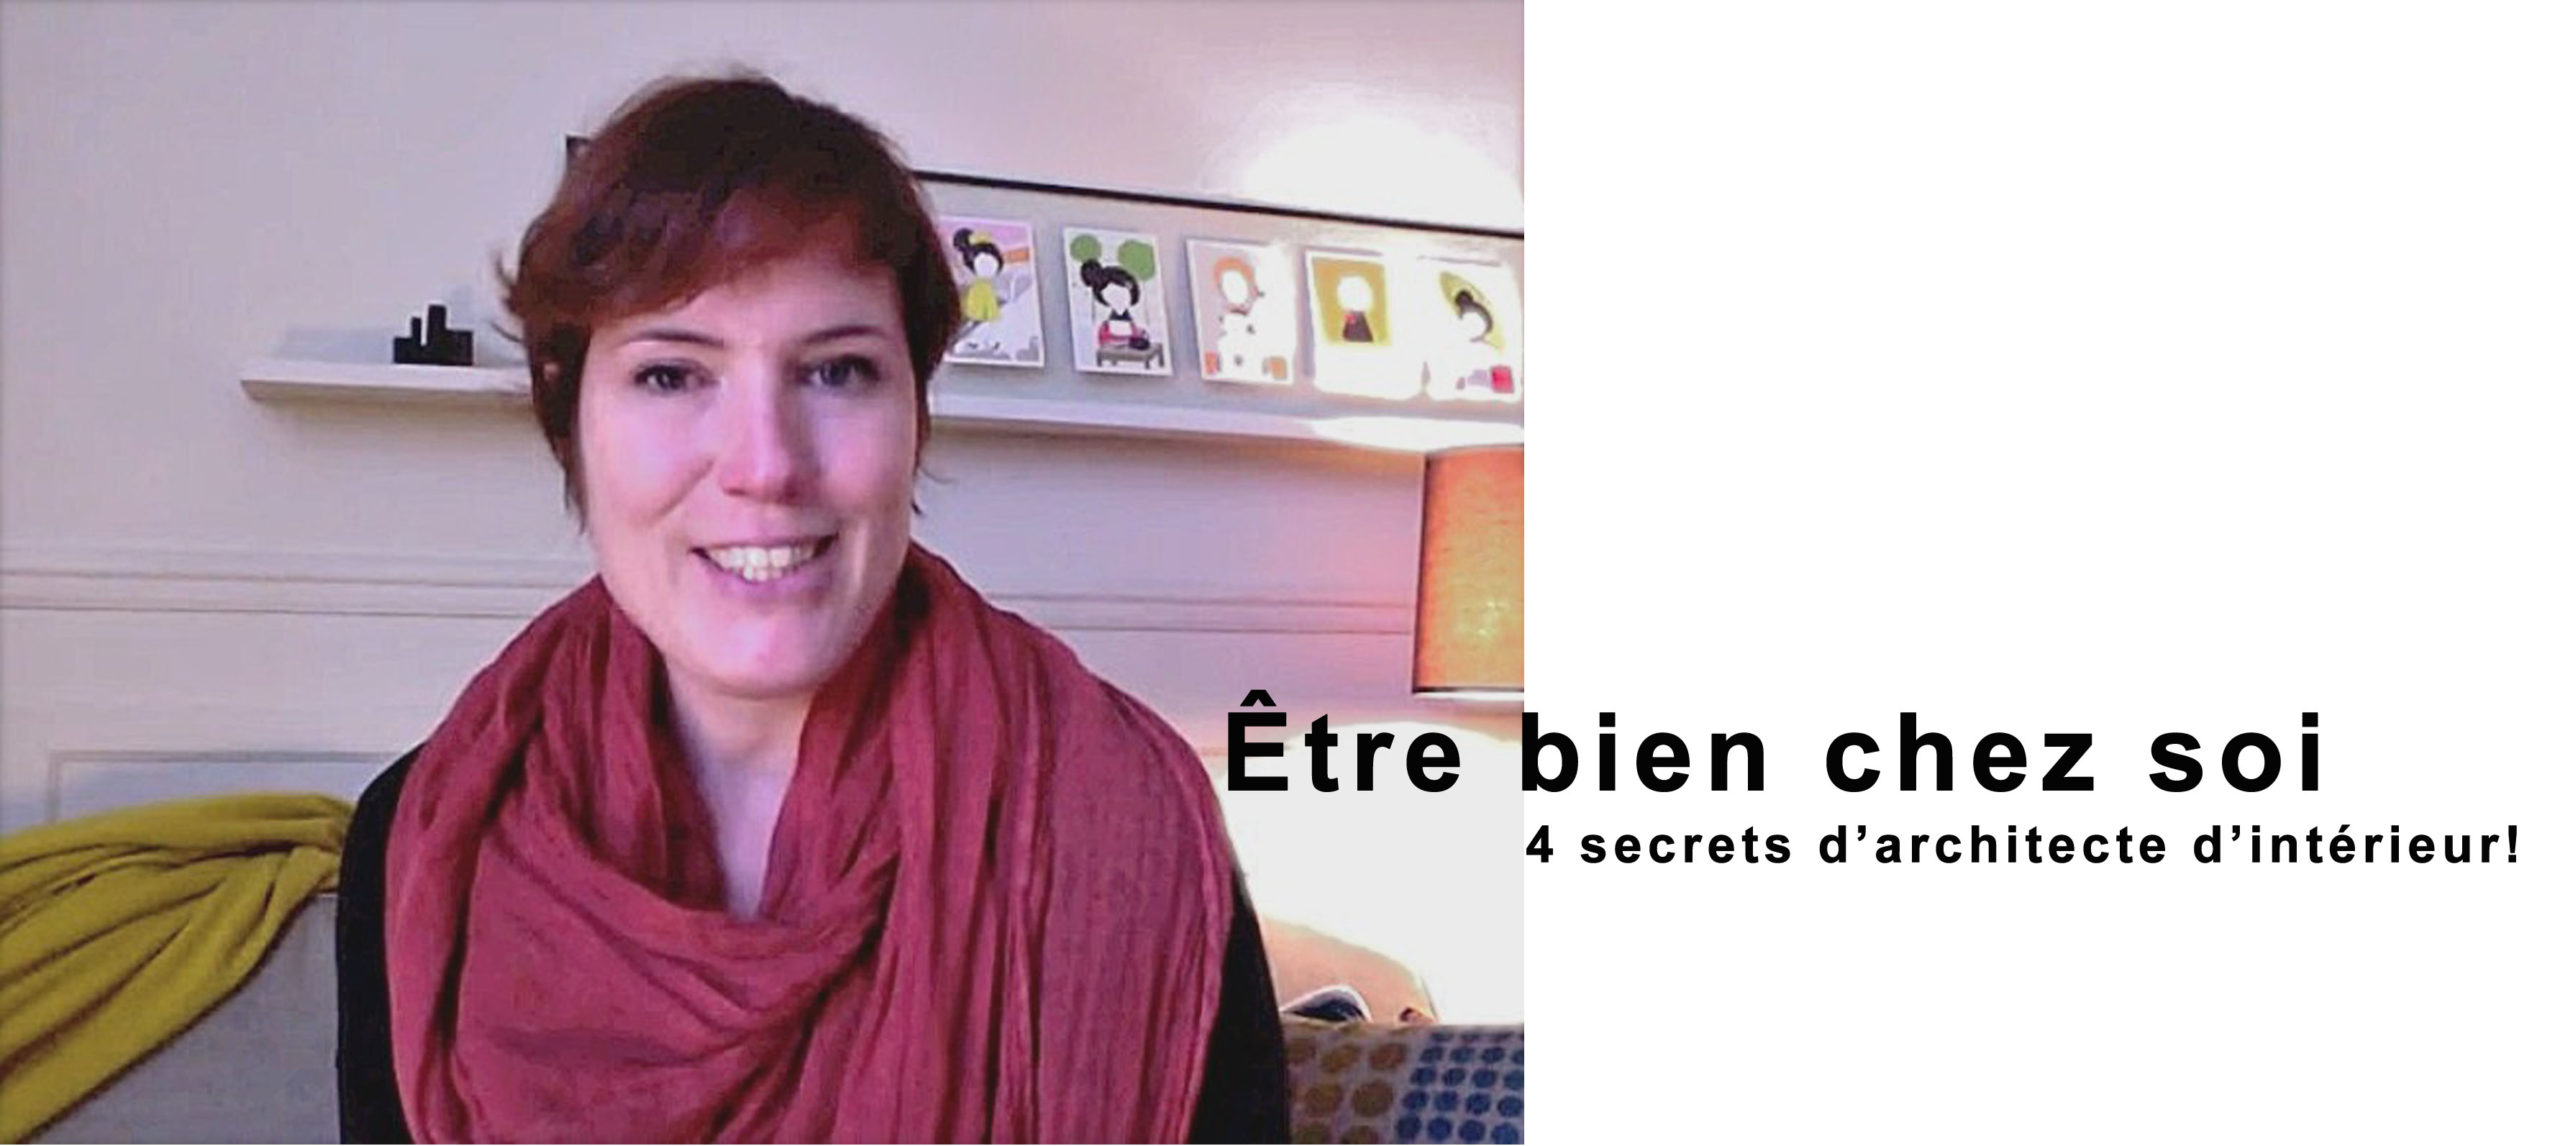 4 Secrets pour être bien chez soi ( Vidéo) - Agence Oz by Cath, architecture d'intérieur